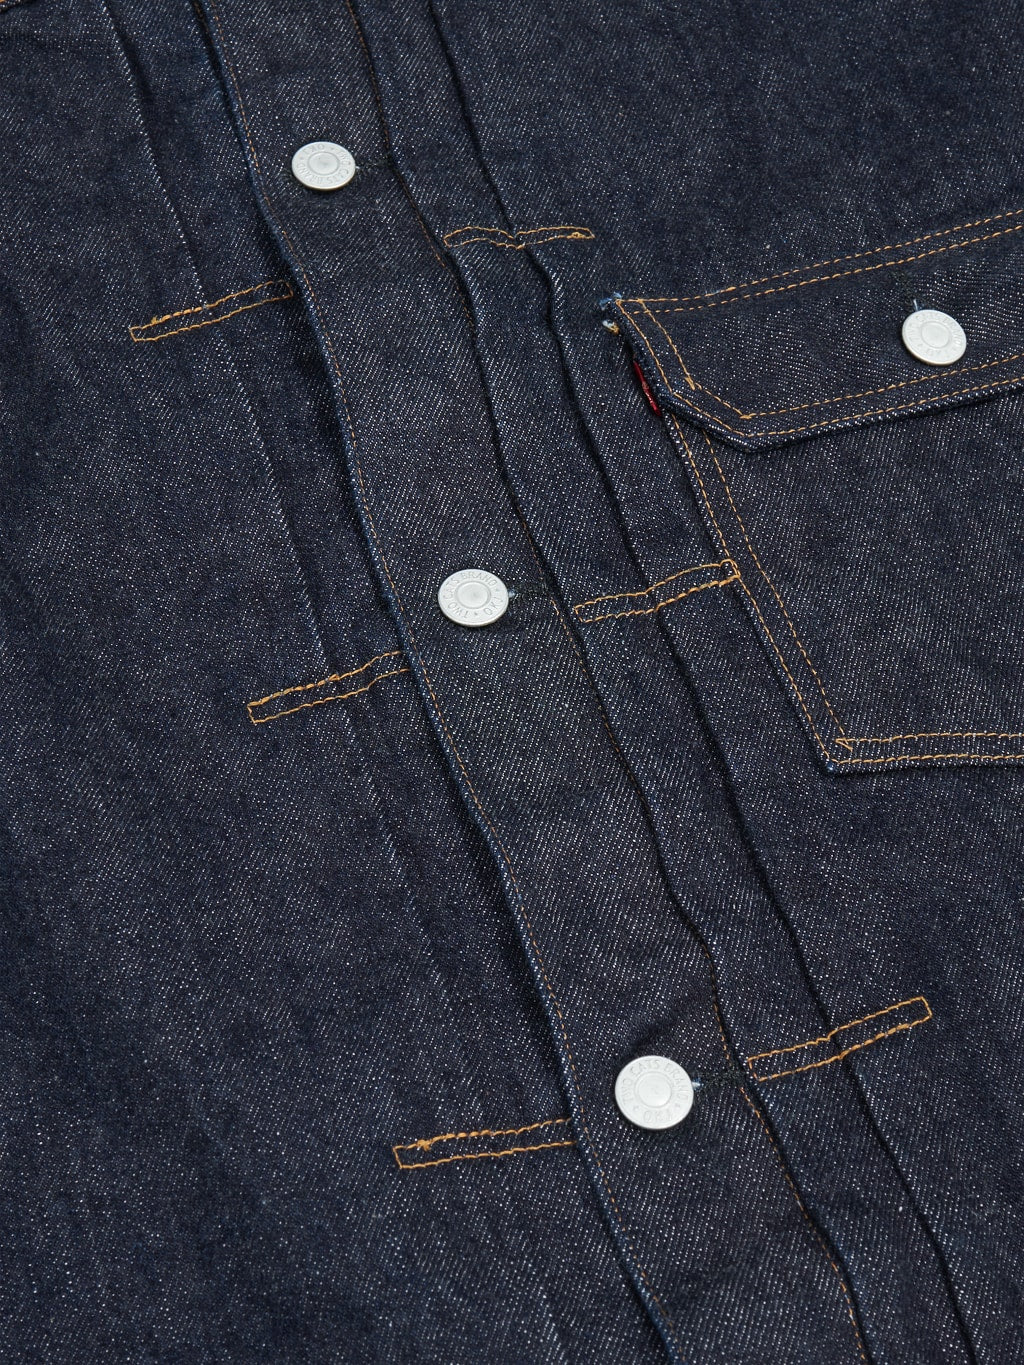 tcb 30s denim jacket iron buttons details